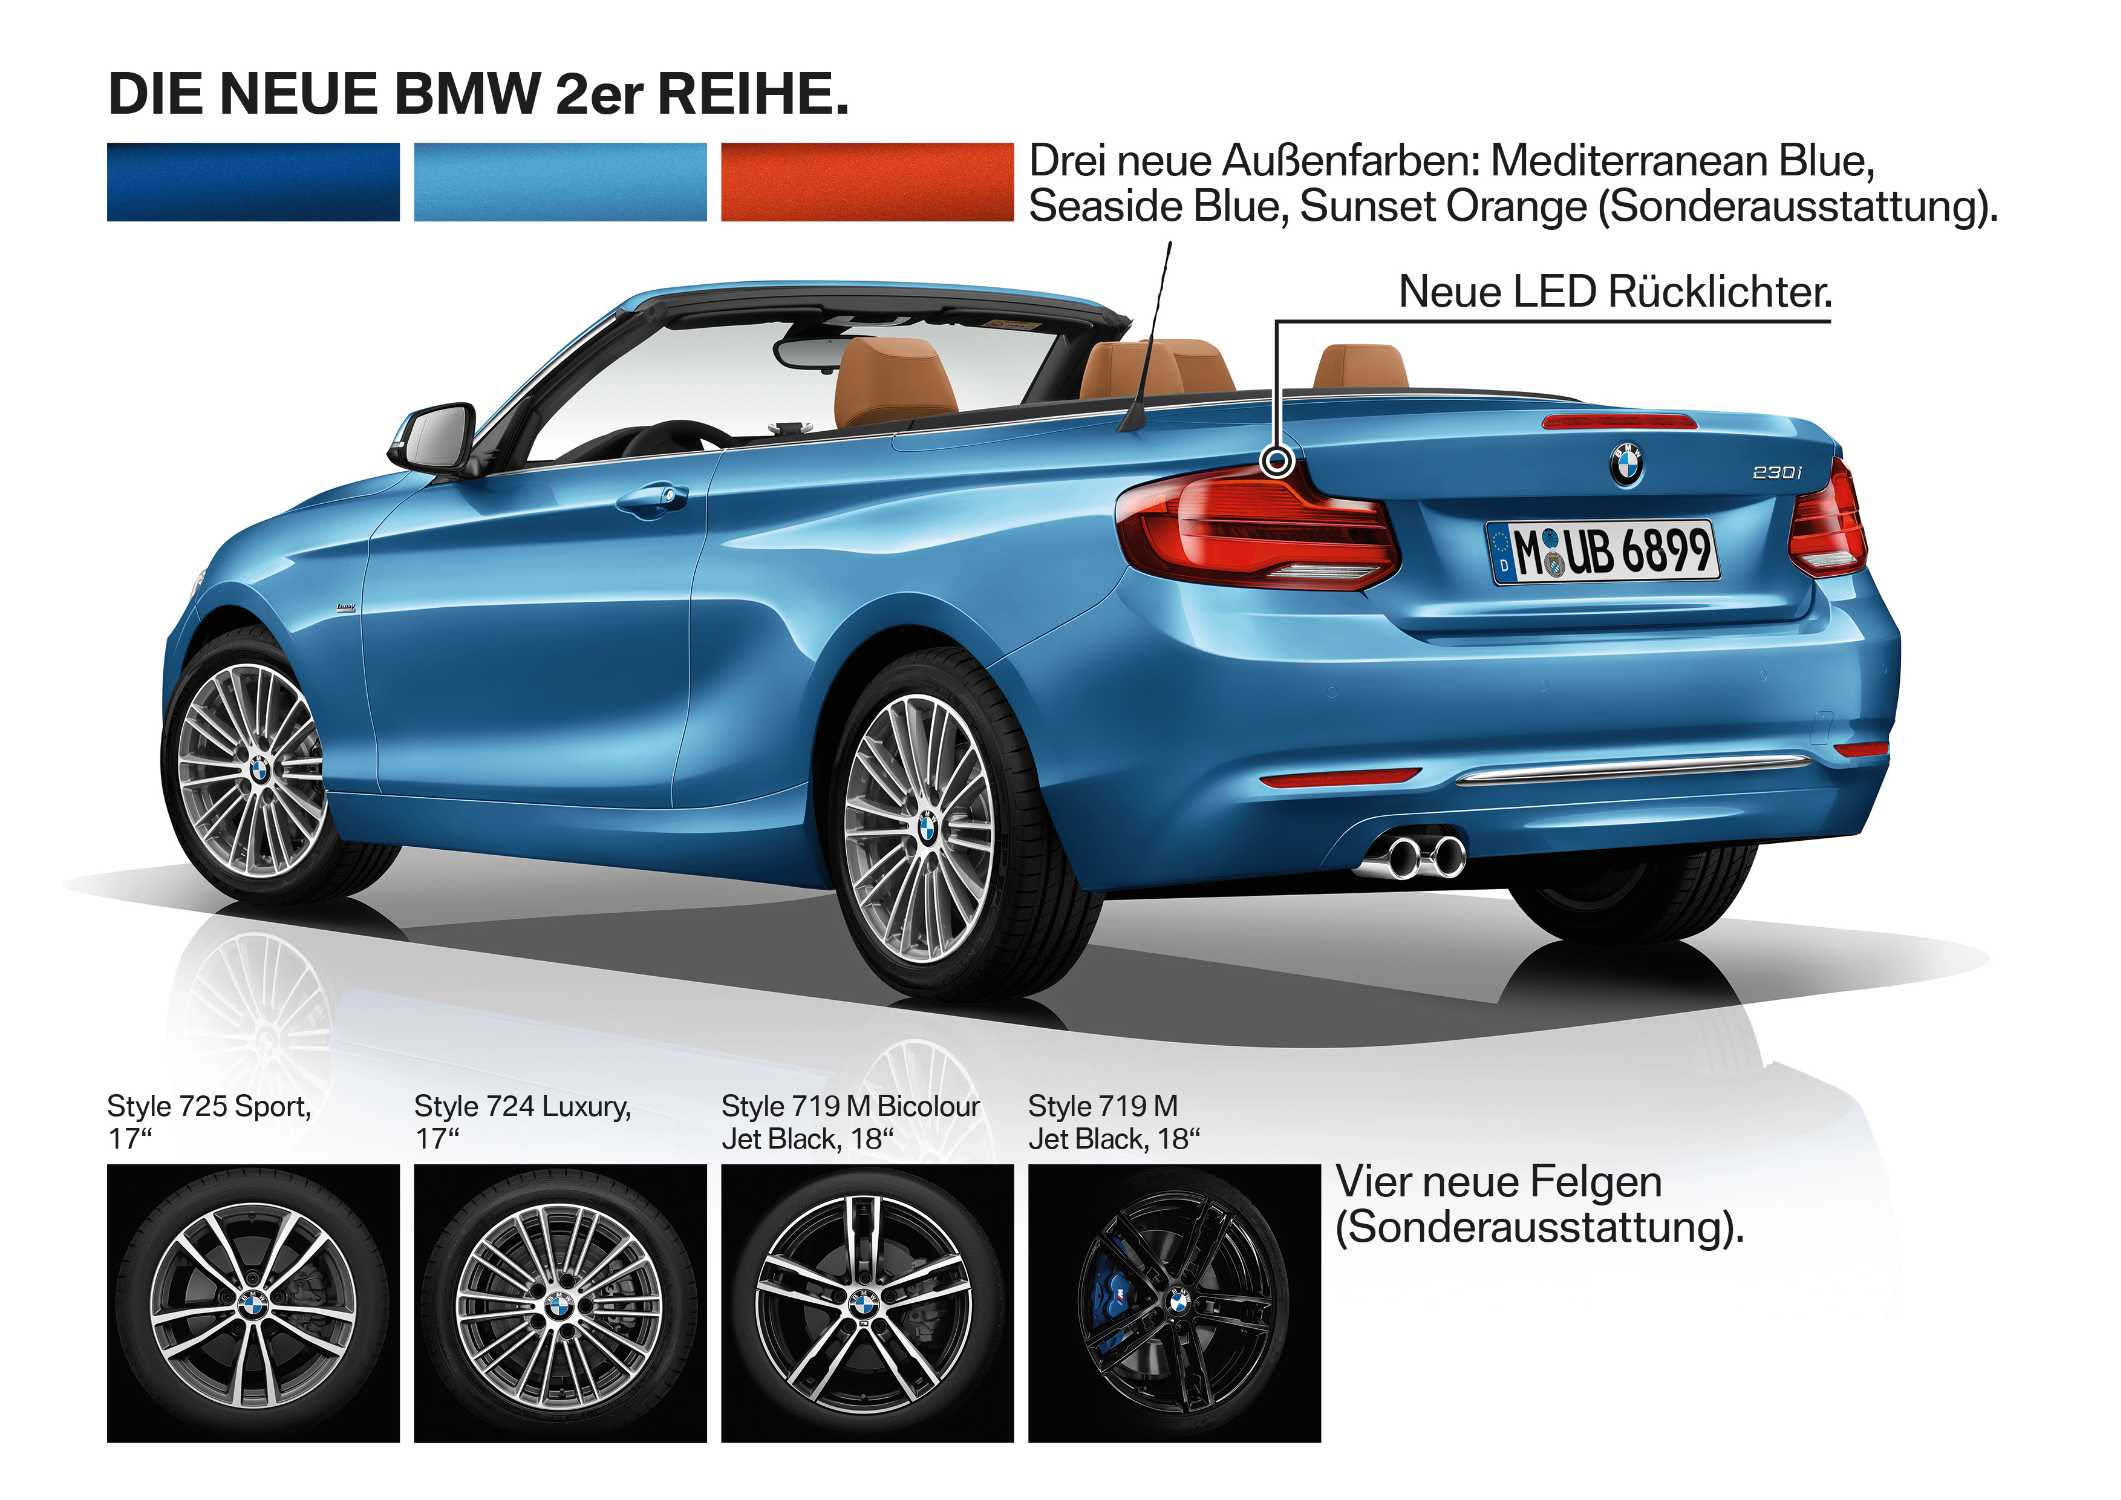 Die neue BMW 2er Reihe, Highlights (05/2017).